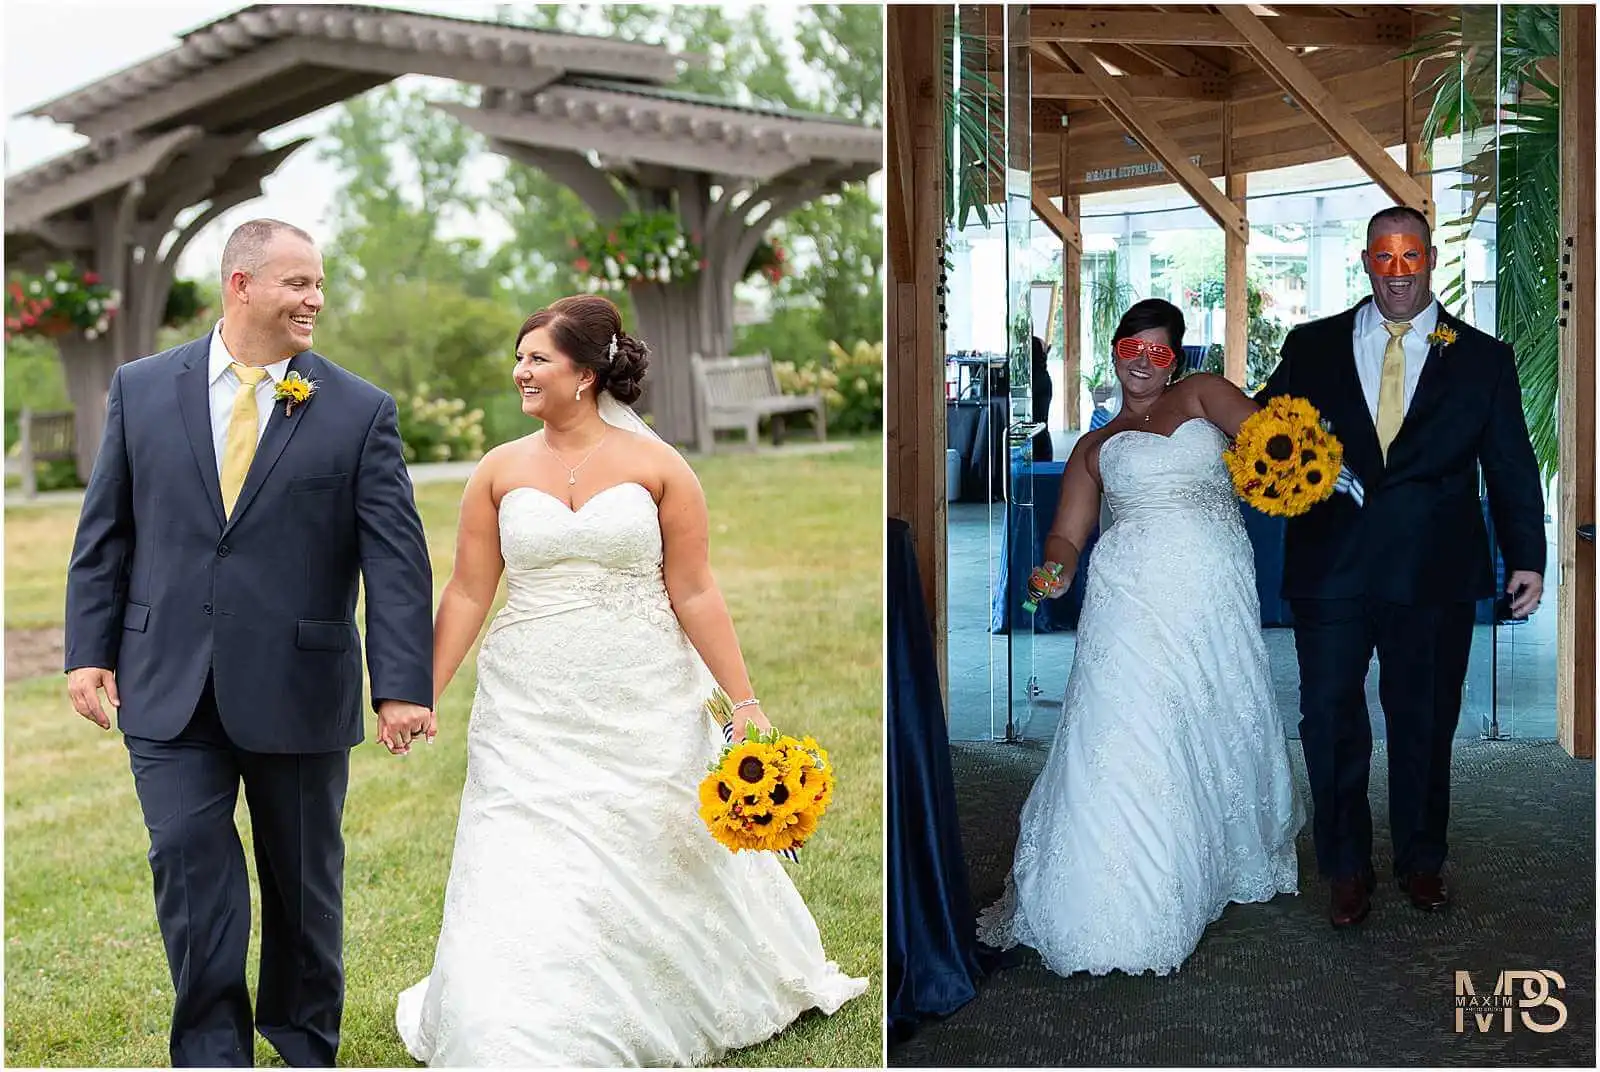 Cox Arboretum Dayton Ohio wedding bridal party pictures